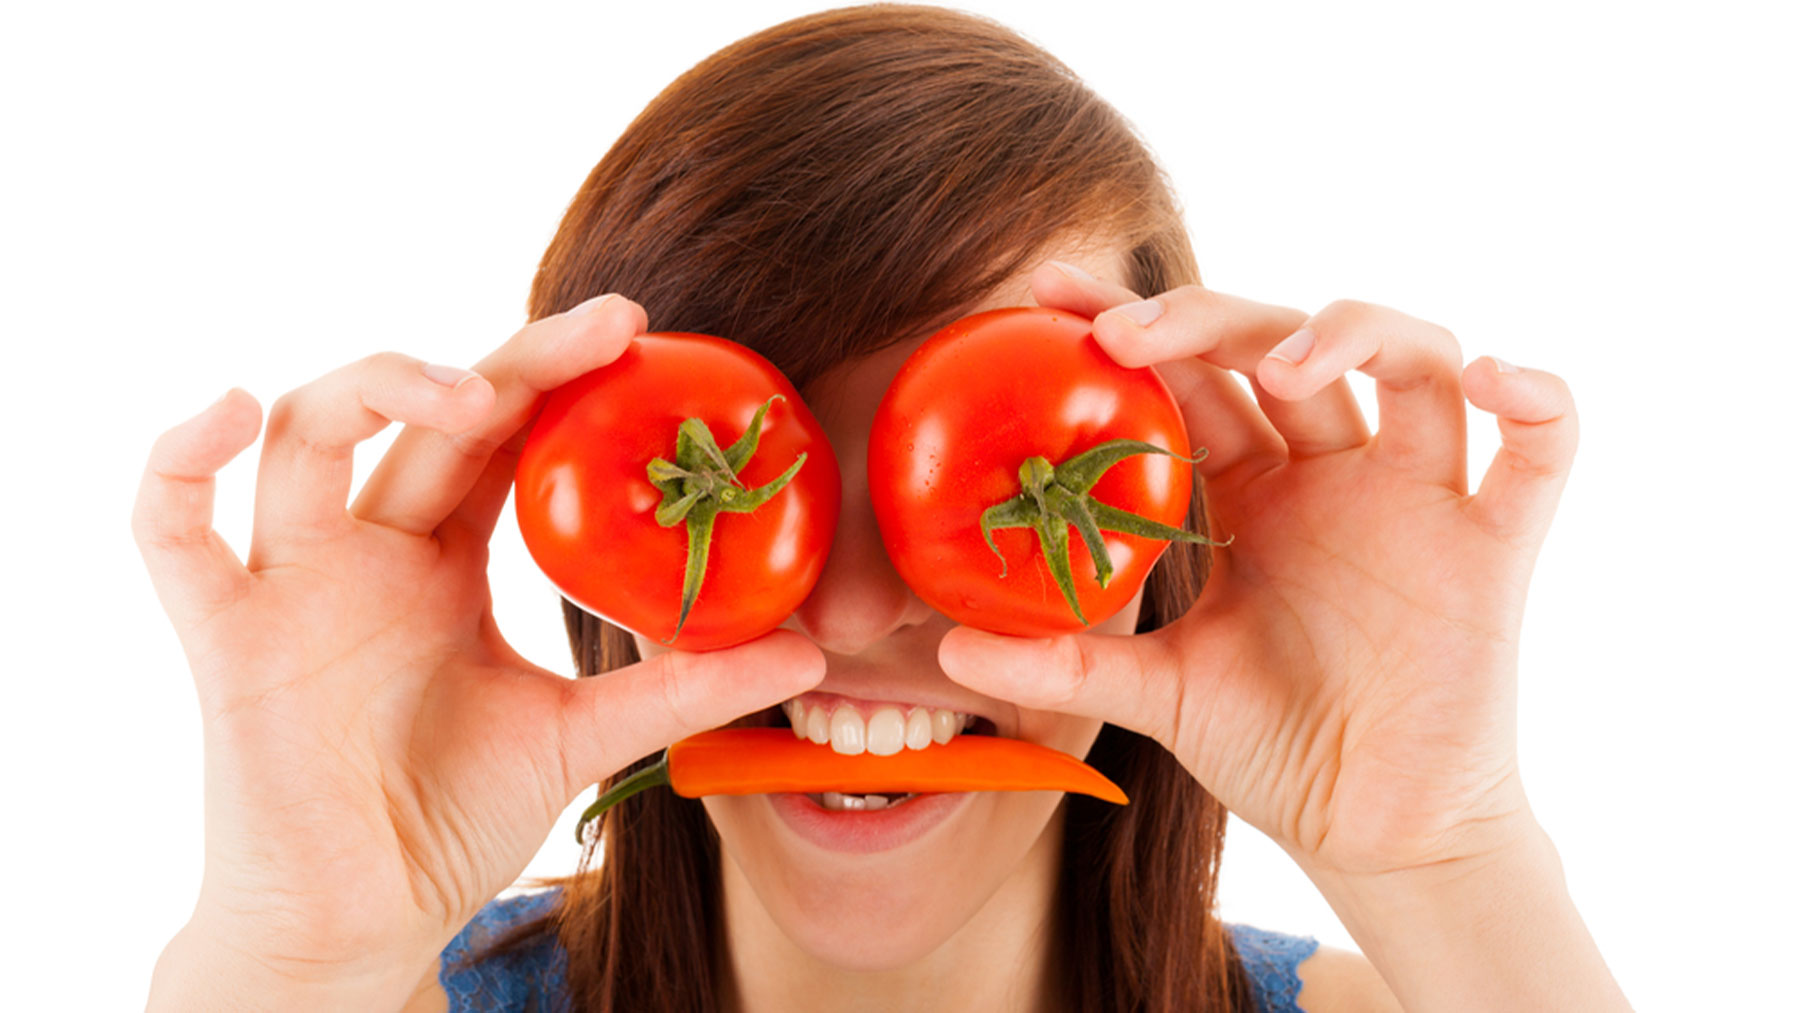 La nutrición puede ser una forma eficaz y placentera de promover la salud ocular.